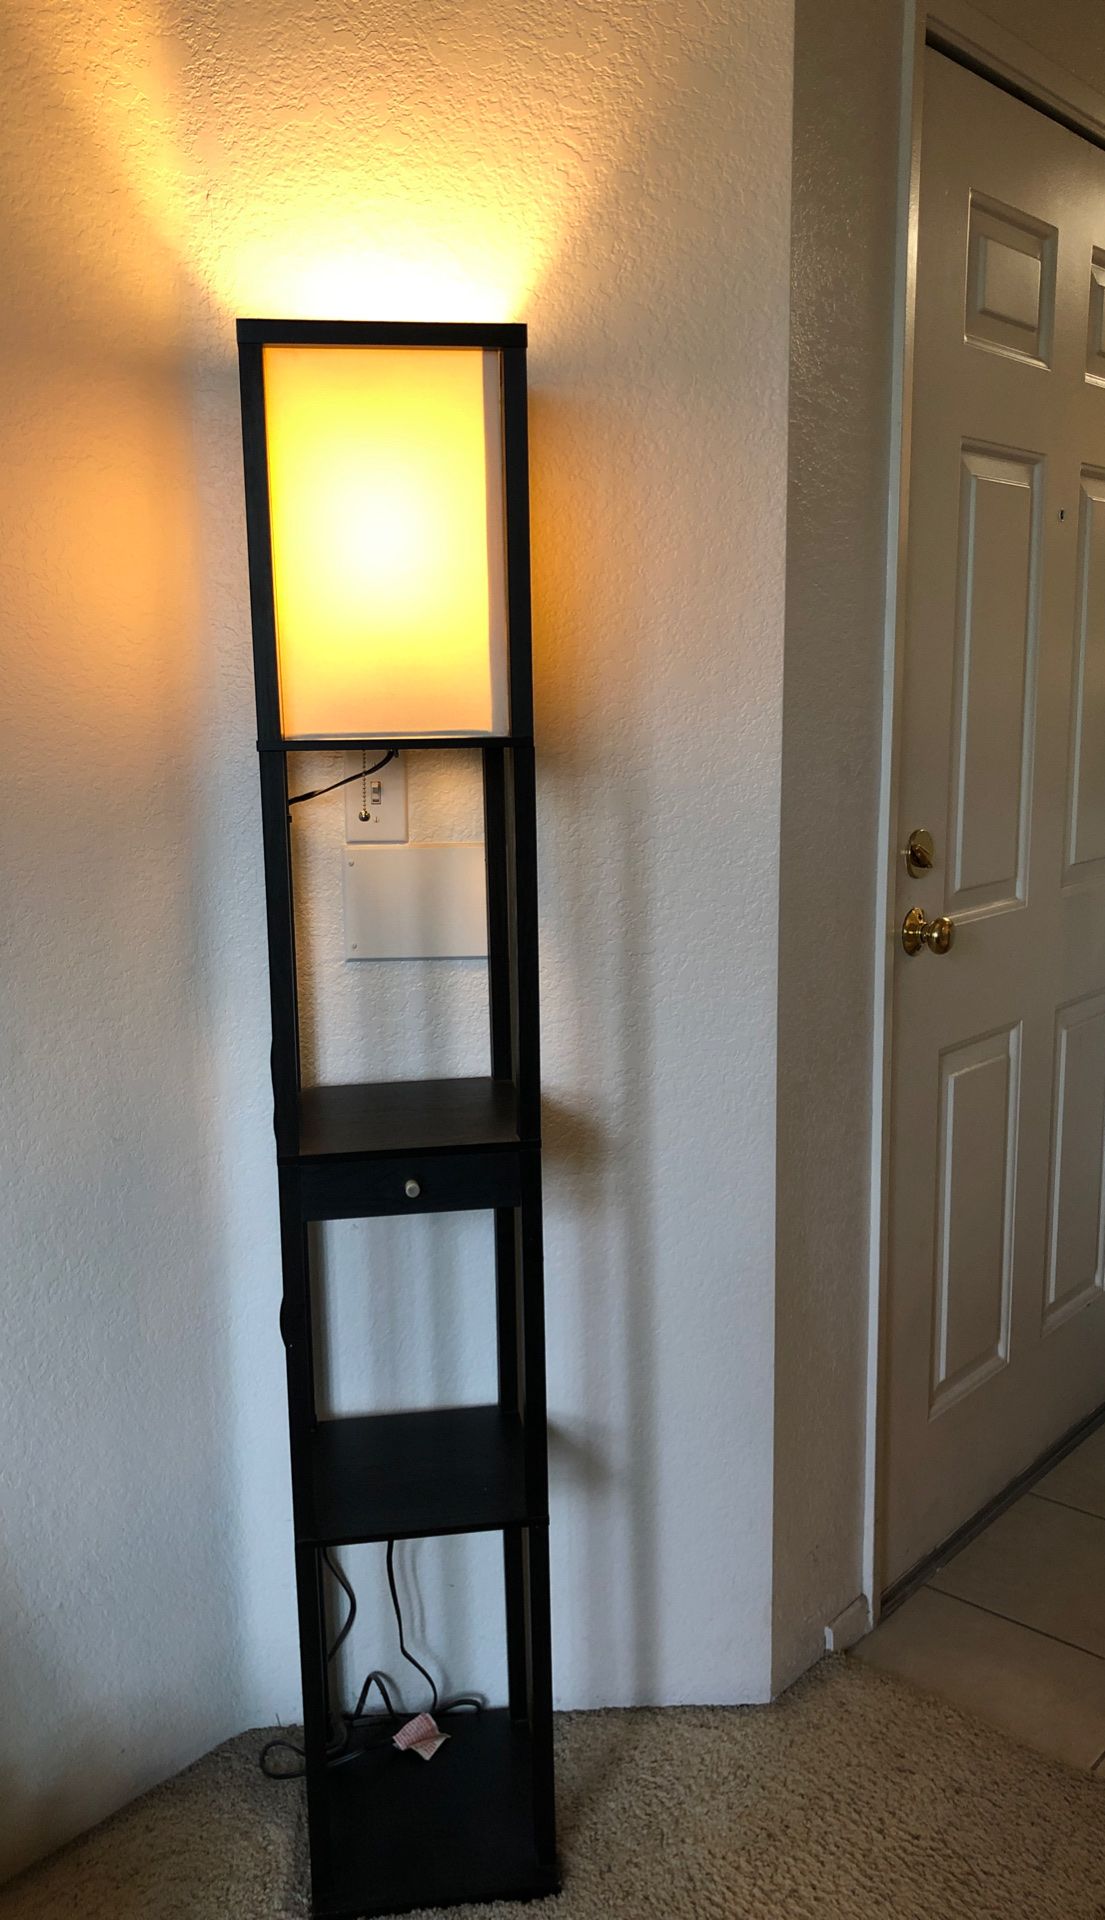 Lamp/Shelf